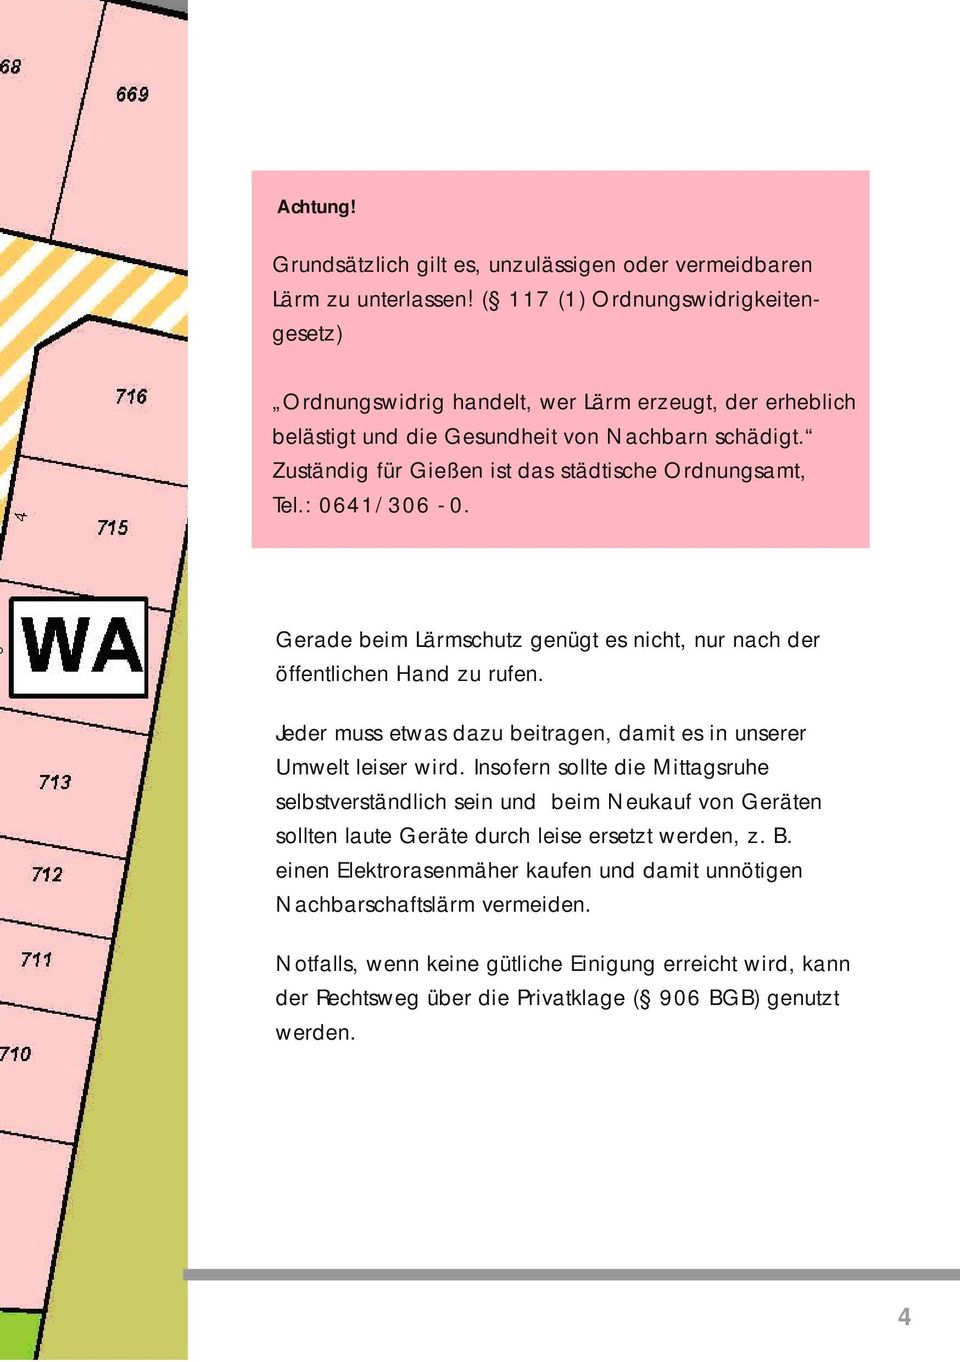 Zuständig für Gießen ist das städtische Ordnungsamt, Tel.: 0641/306-0. Gerade beim Lärmschutz genügt es nicht, nur nach der öffentlichen Hand zu rufen.